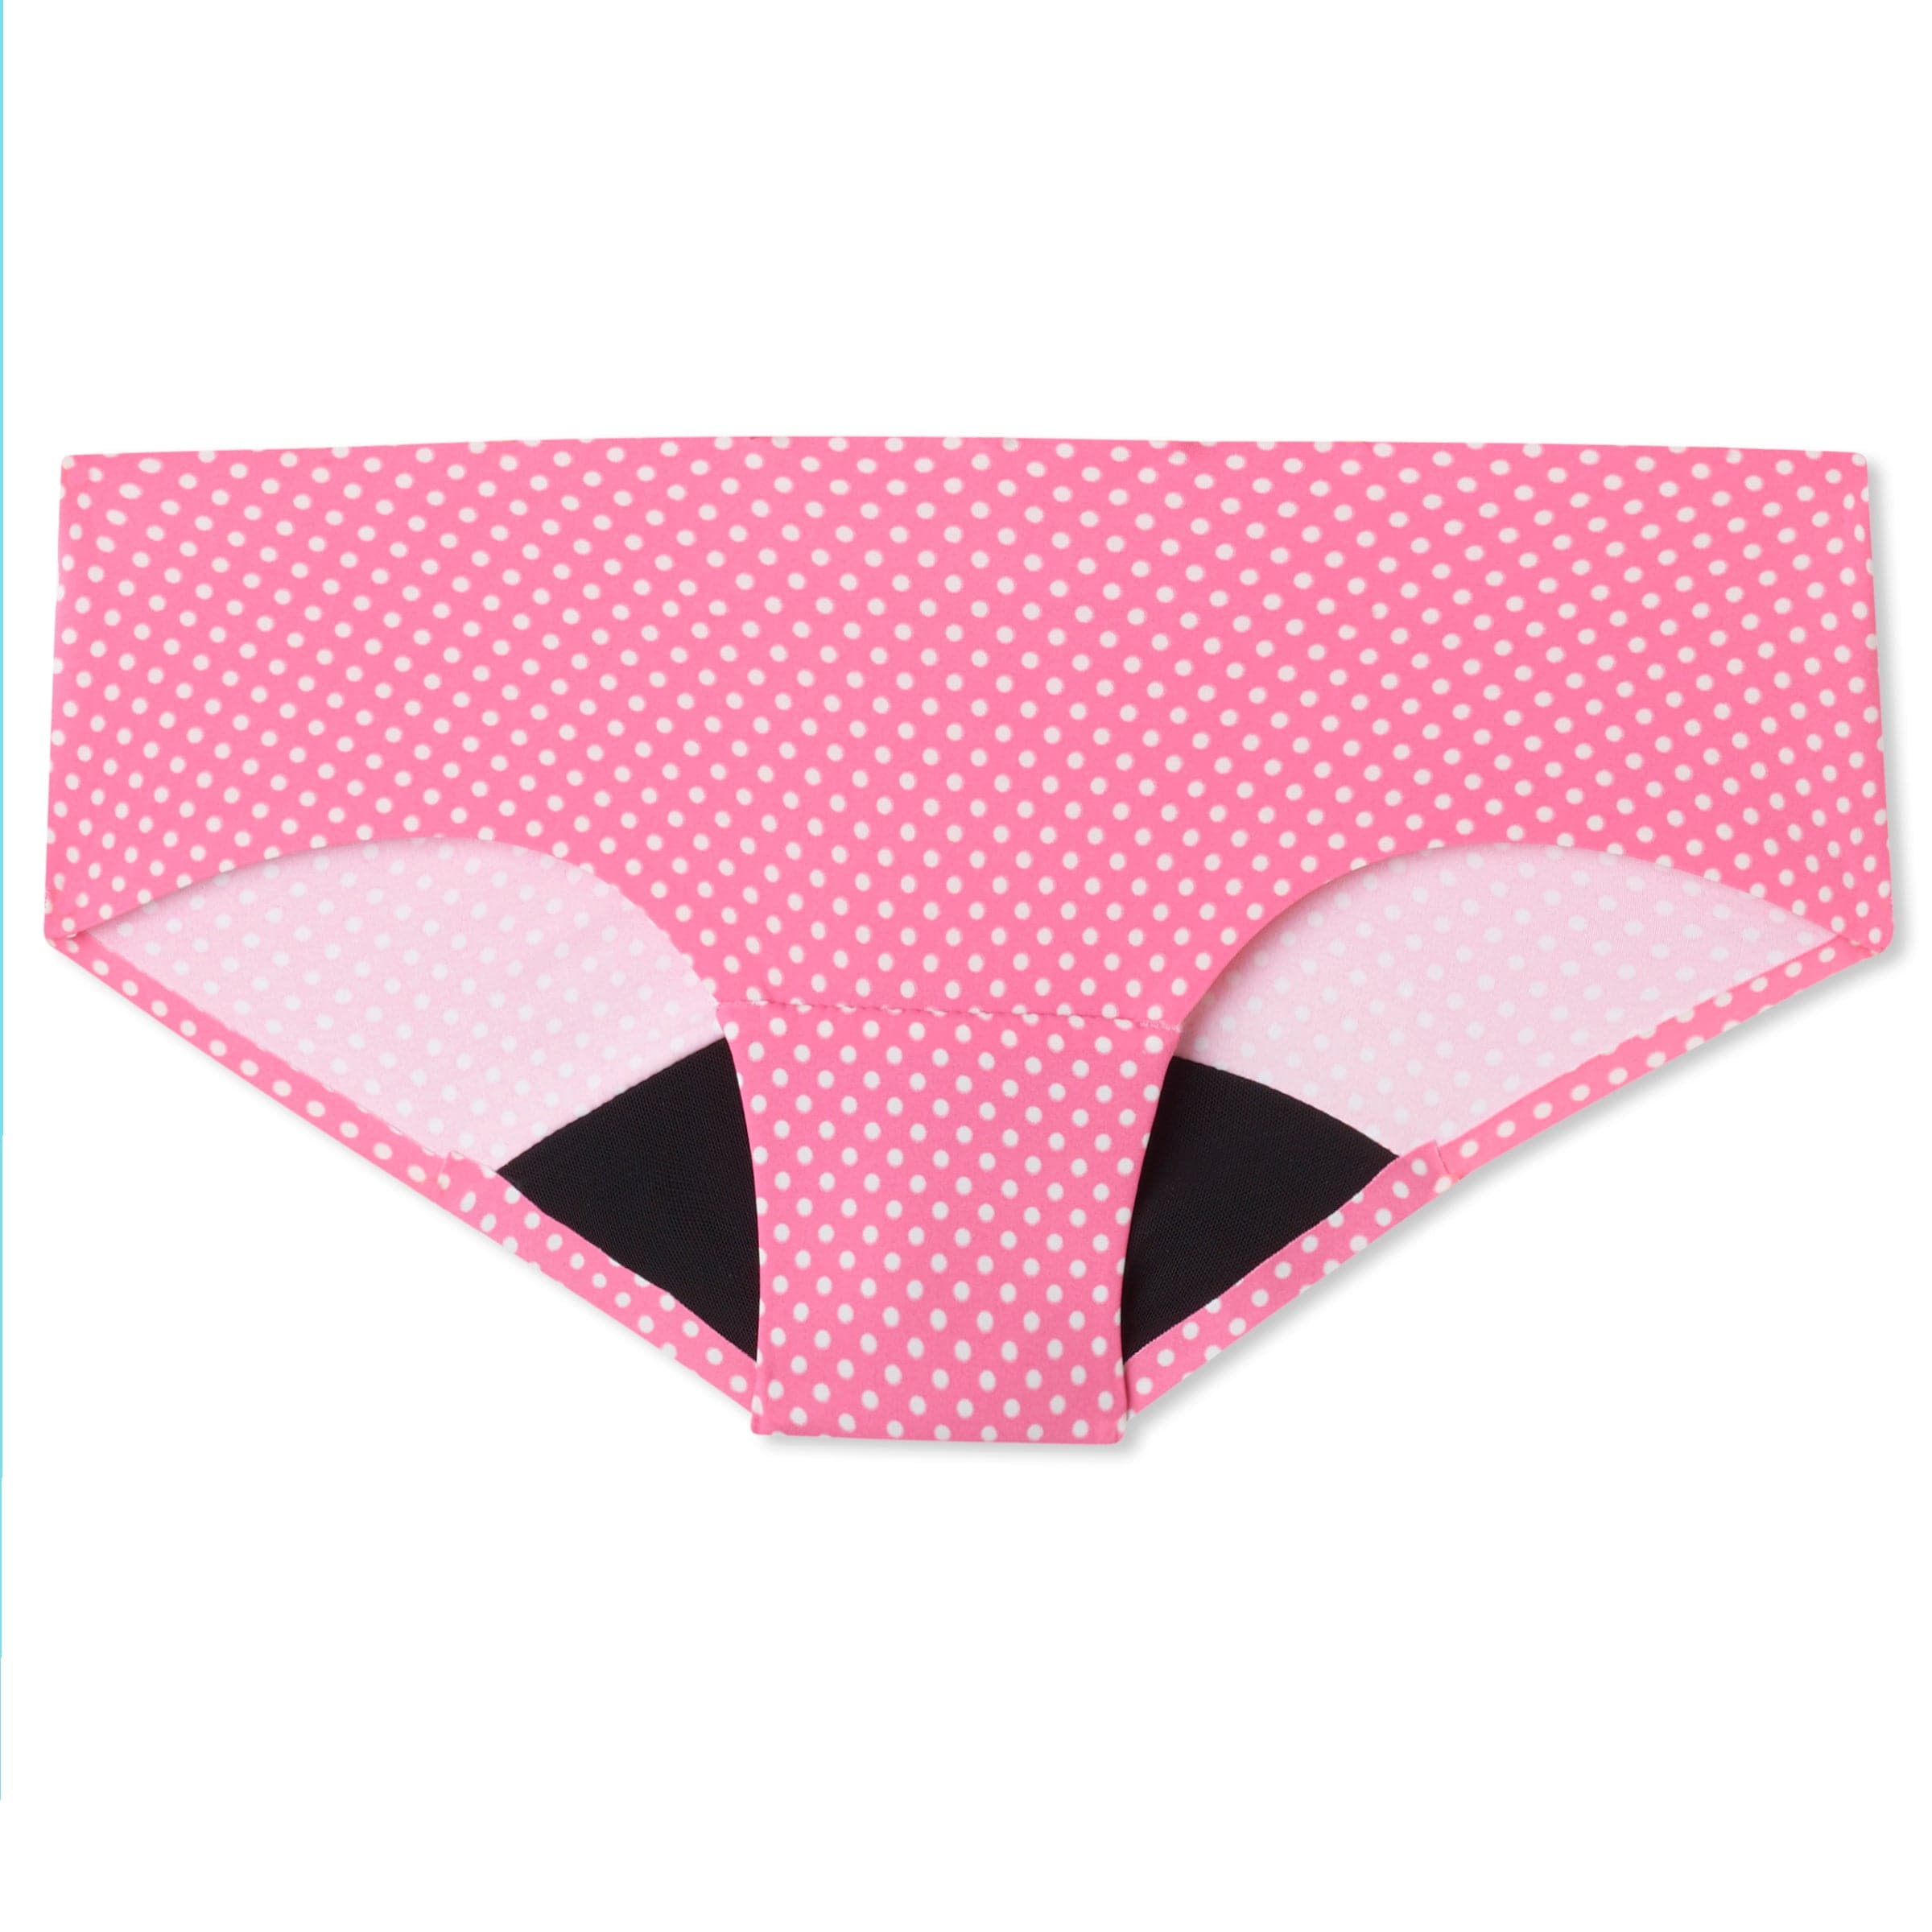 Nickeze Taylor Teen Period Underwear (XS-M)-Pink